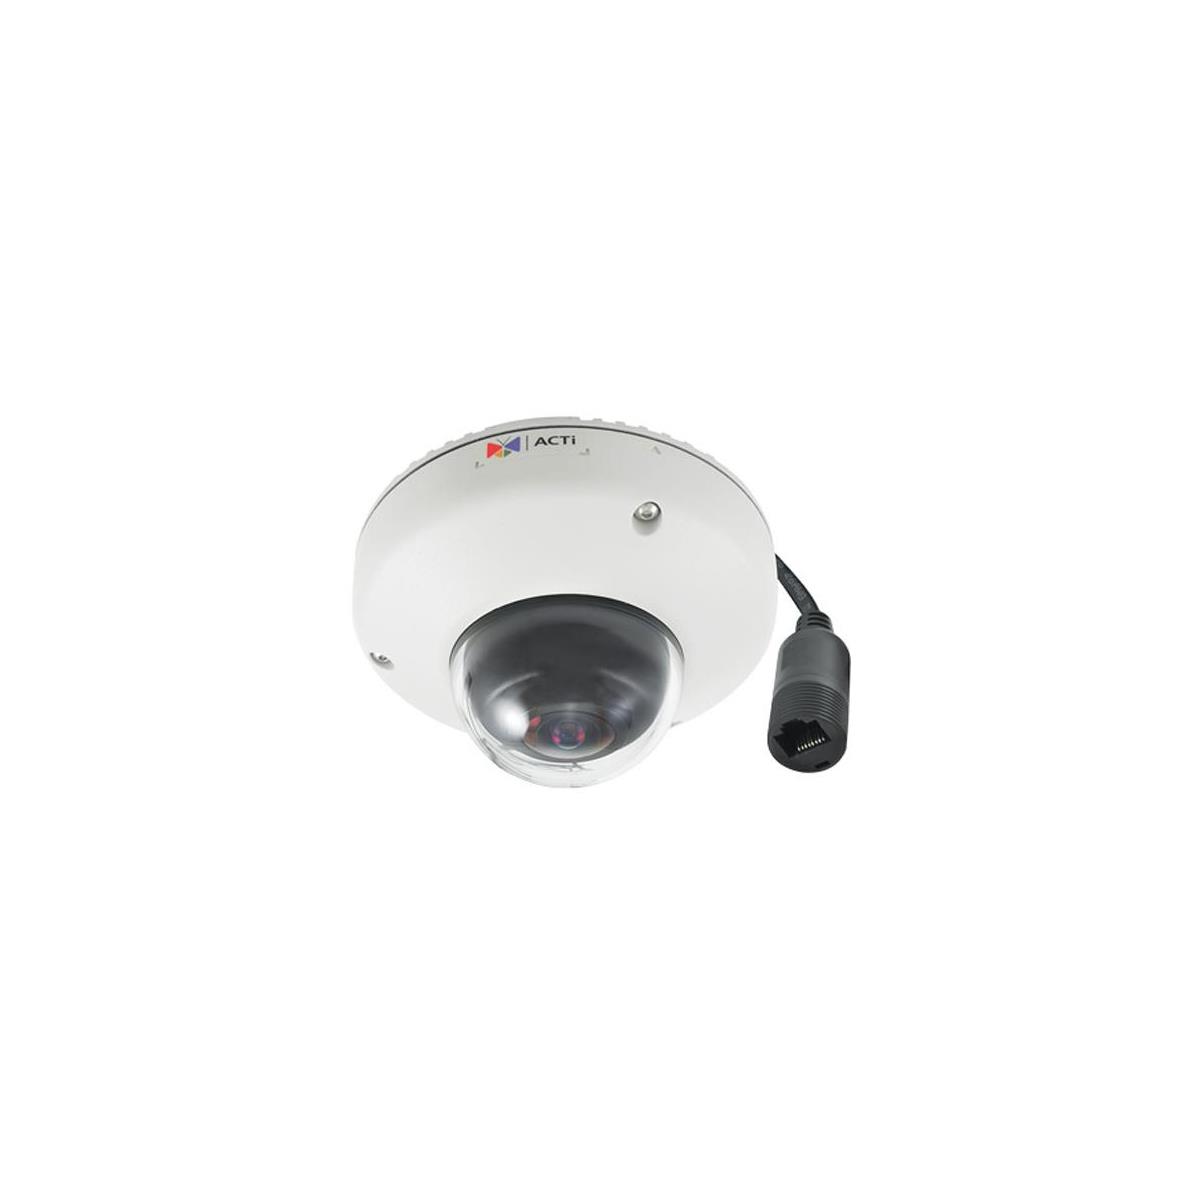 Image of ACTi ACTI E922 Outdoor Mini Dome Camera